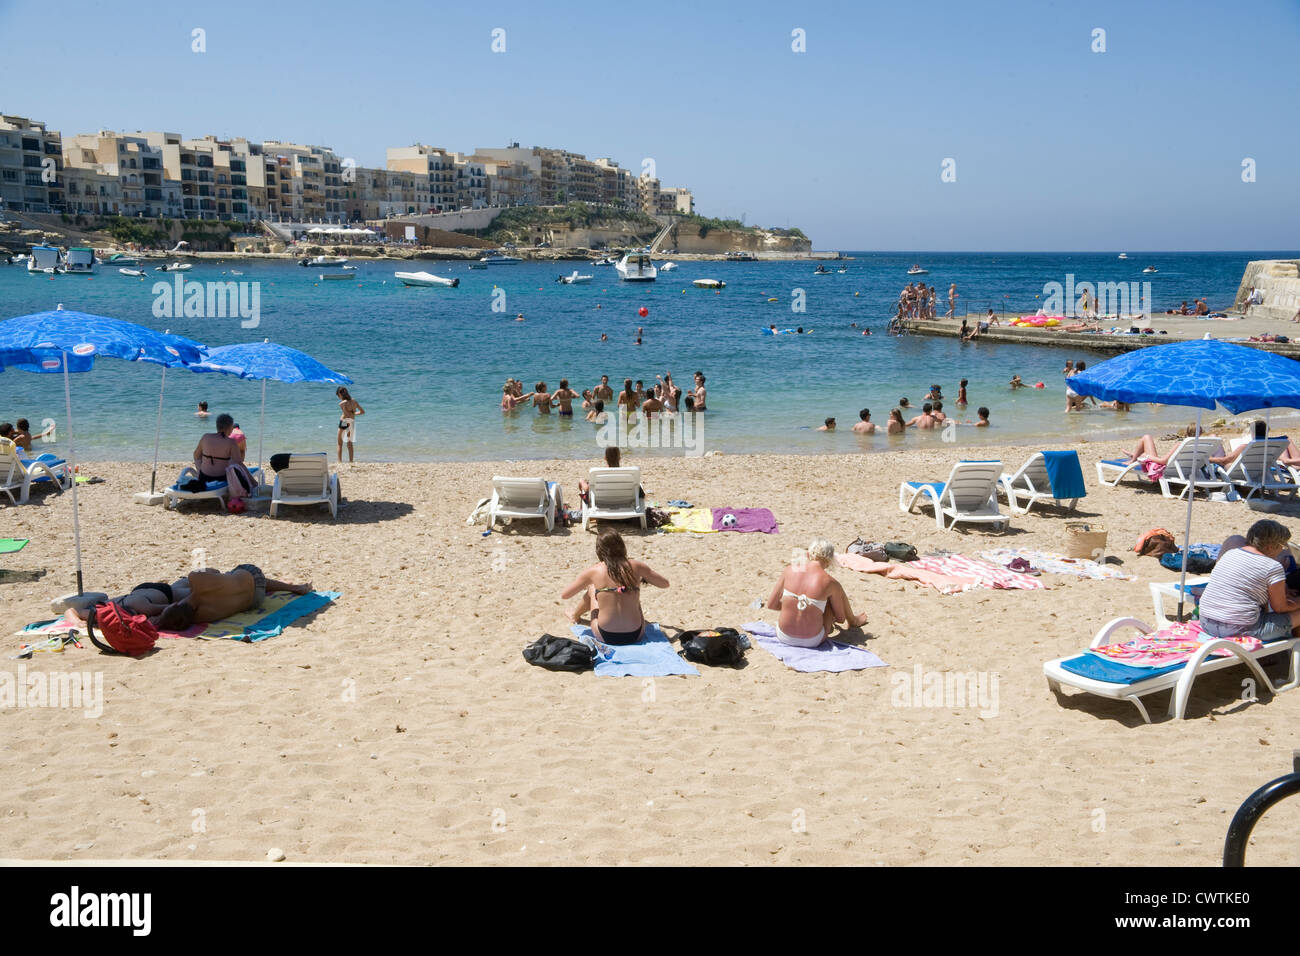 Les habitants et les touristes sur la plage à Marsalforn sur l'île maltaise de Gozo. Banque D'Images